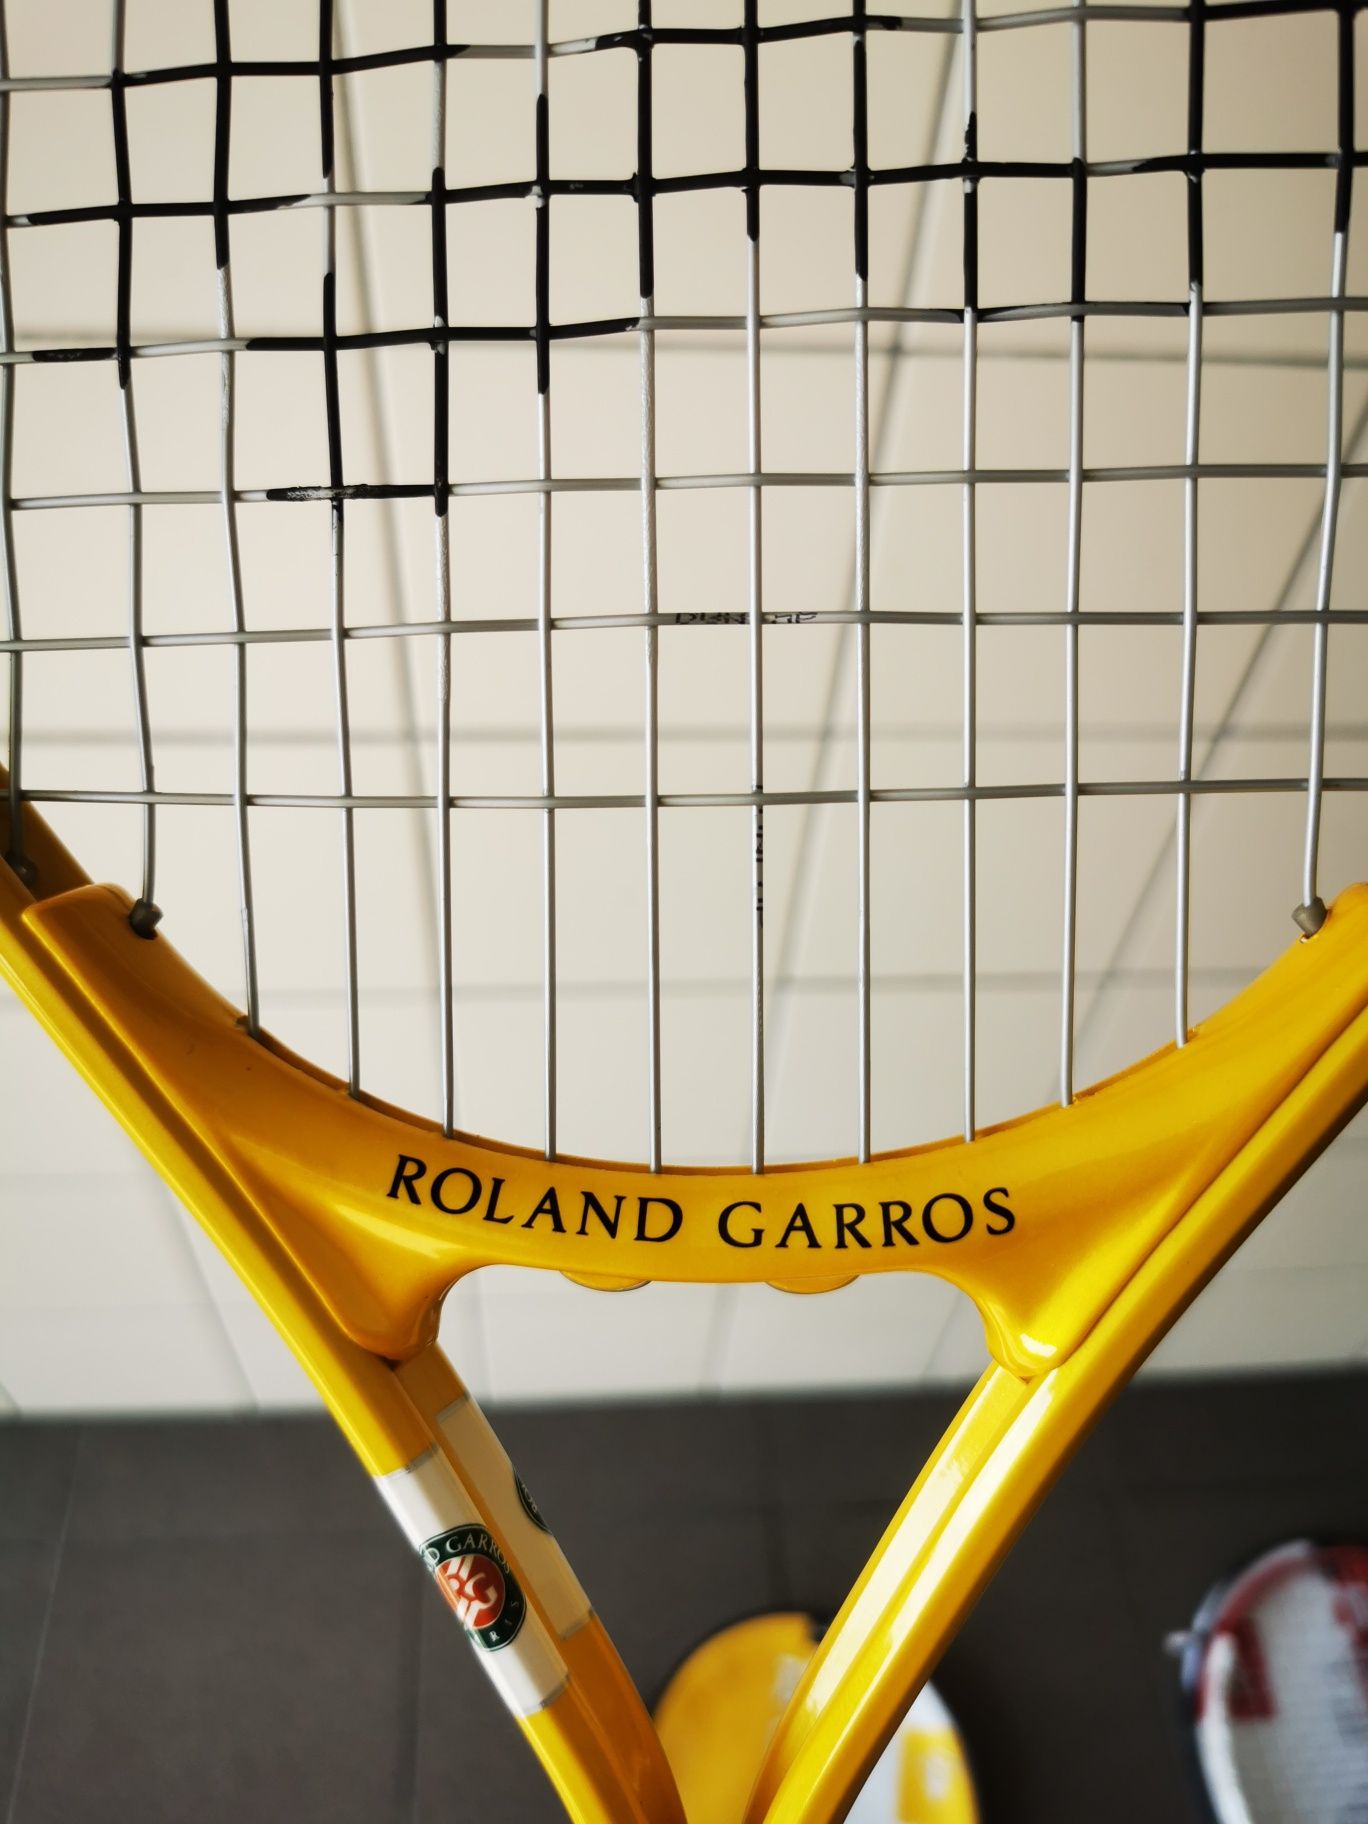 Rakieta do tenisa dunlop żółta lub czerwoną Roland Garros